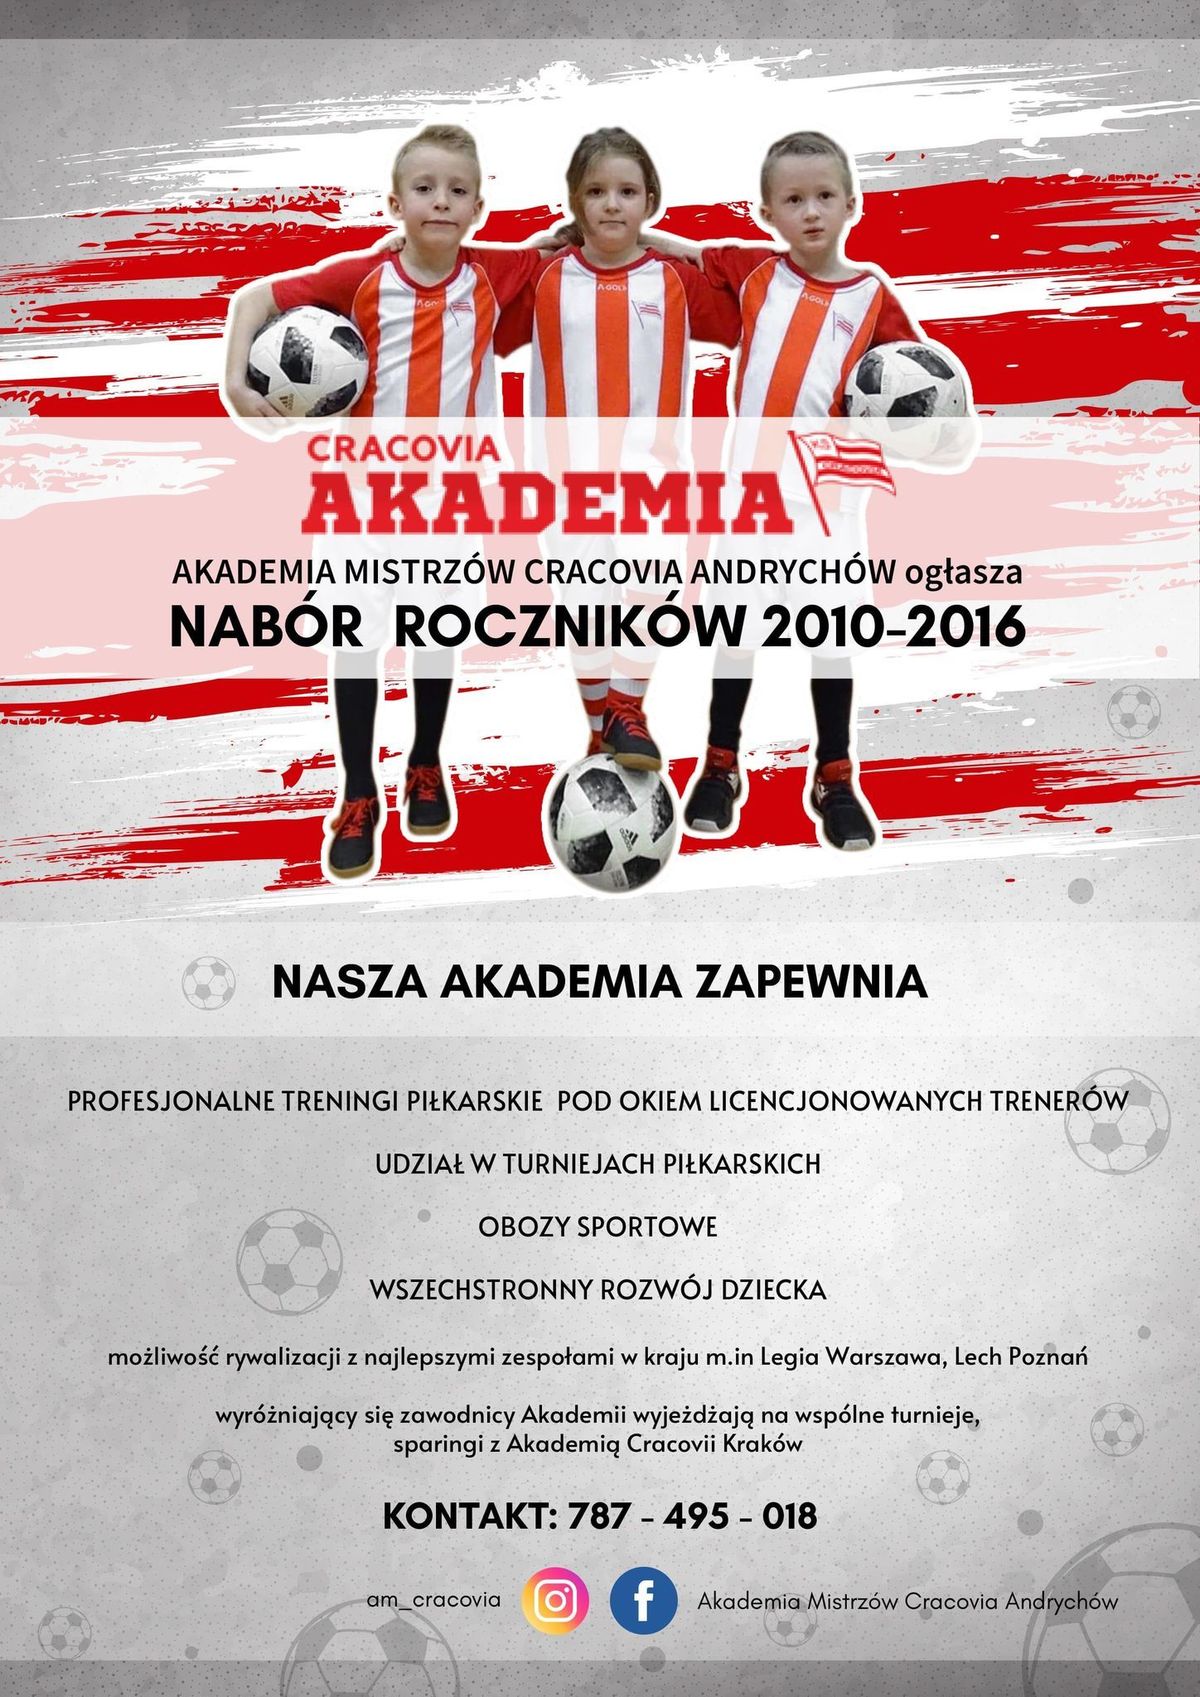 Akademia ekstraklasowej Cracovii zaprasza wszystkich chętnych na profesjonalne zajęcia piłki nożnej